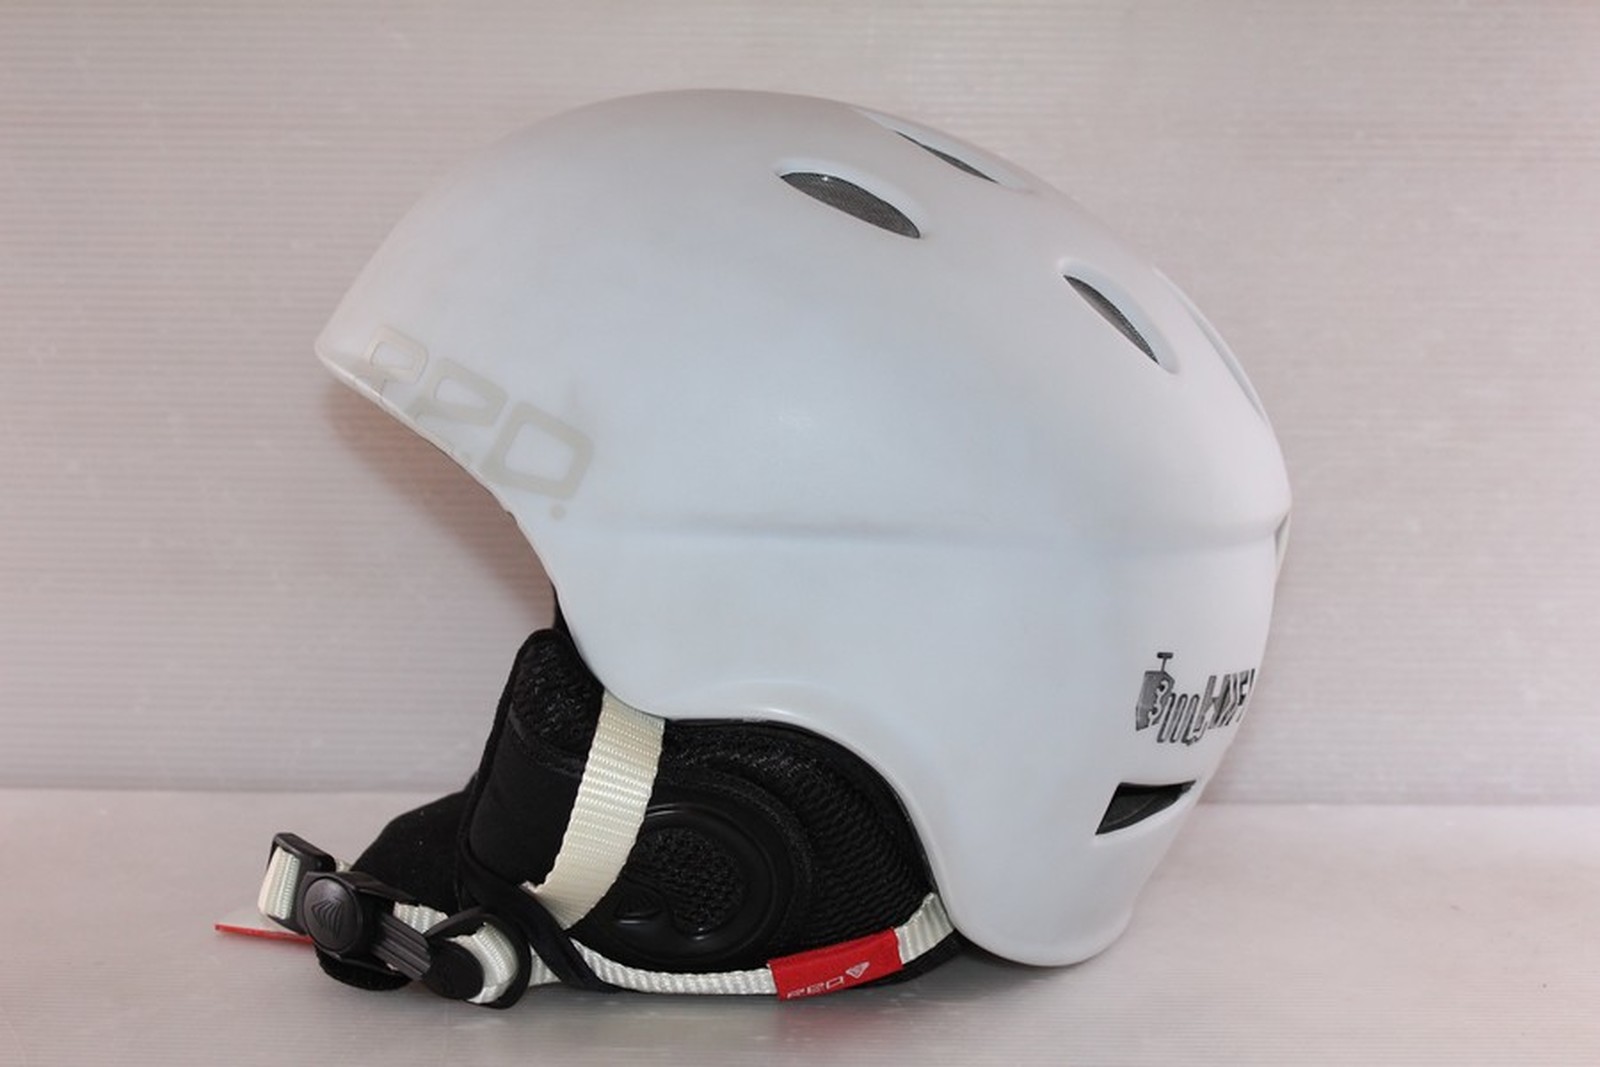 Dámská lyžařská helma RED Hi-fi vel. 62 cm